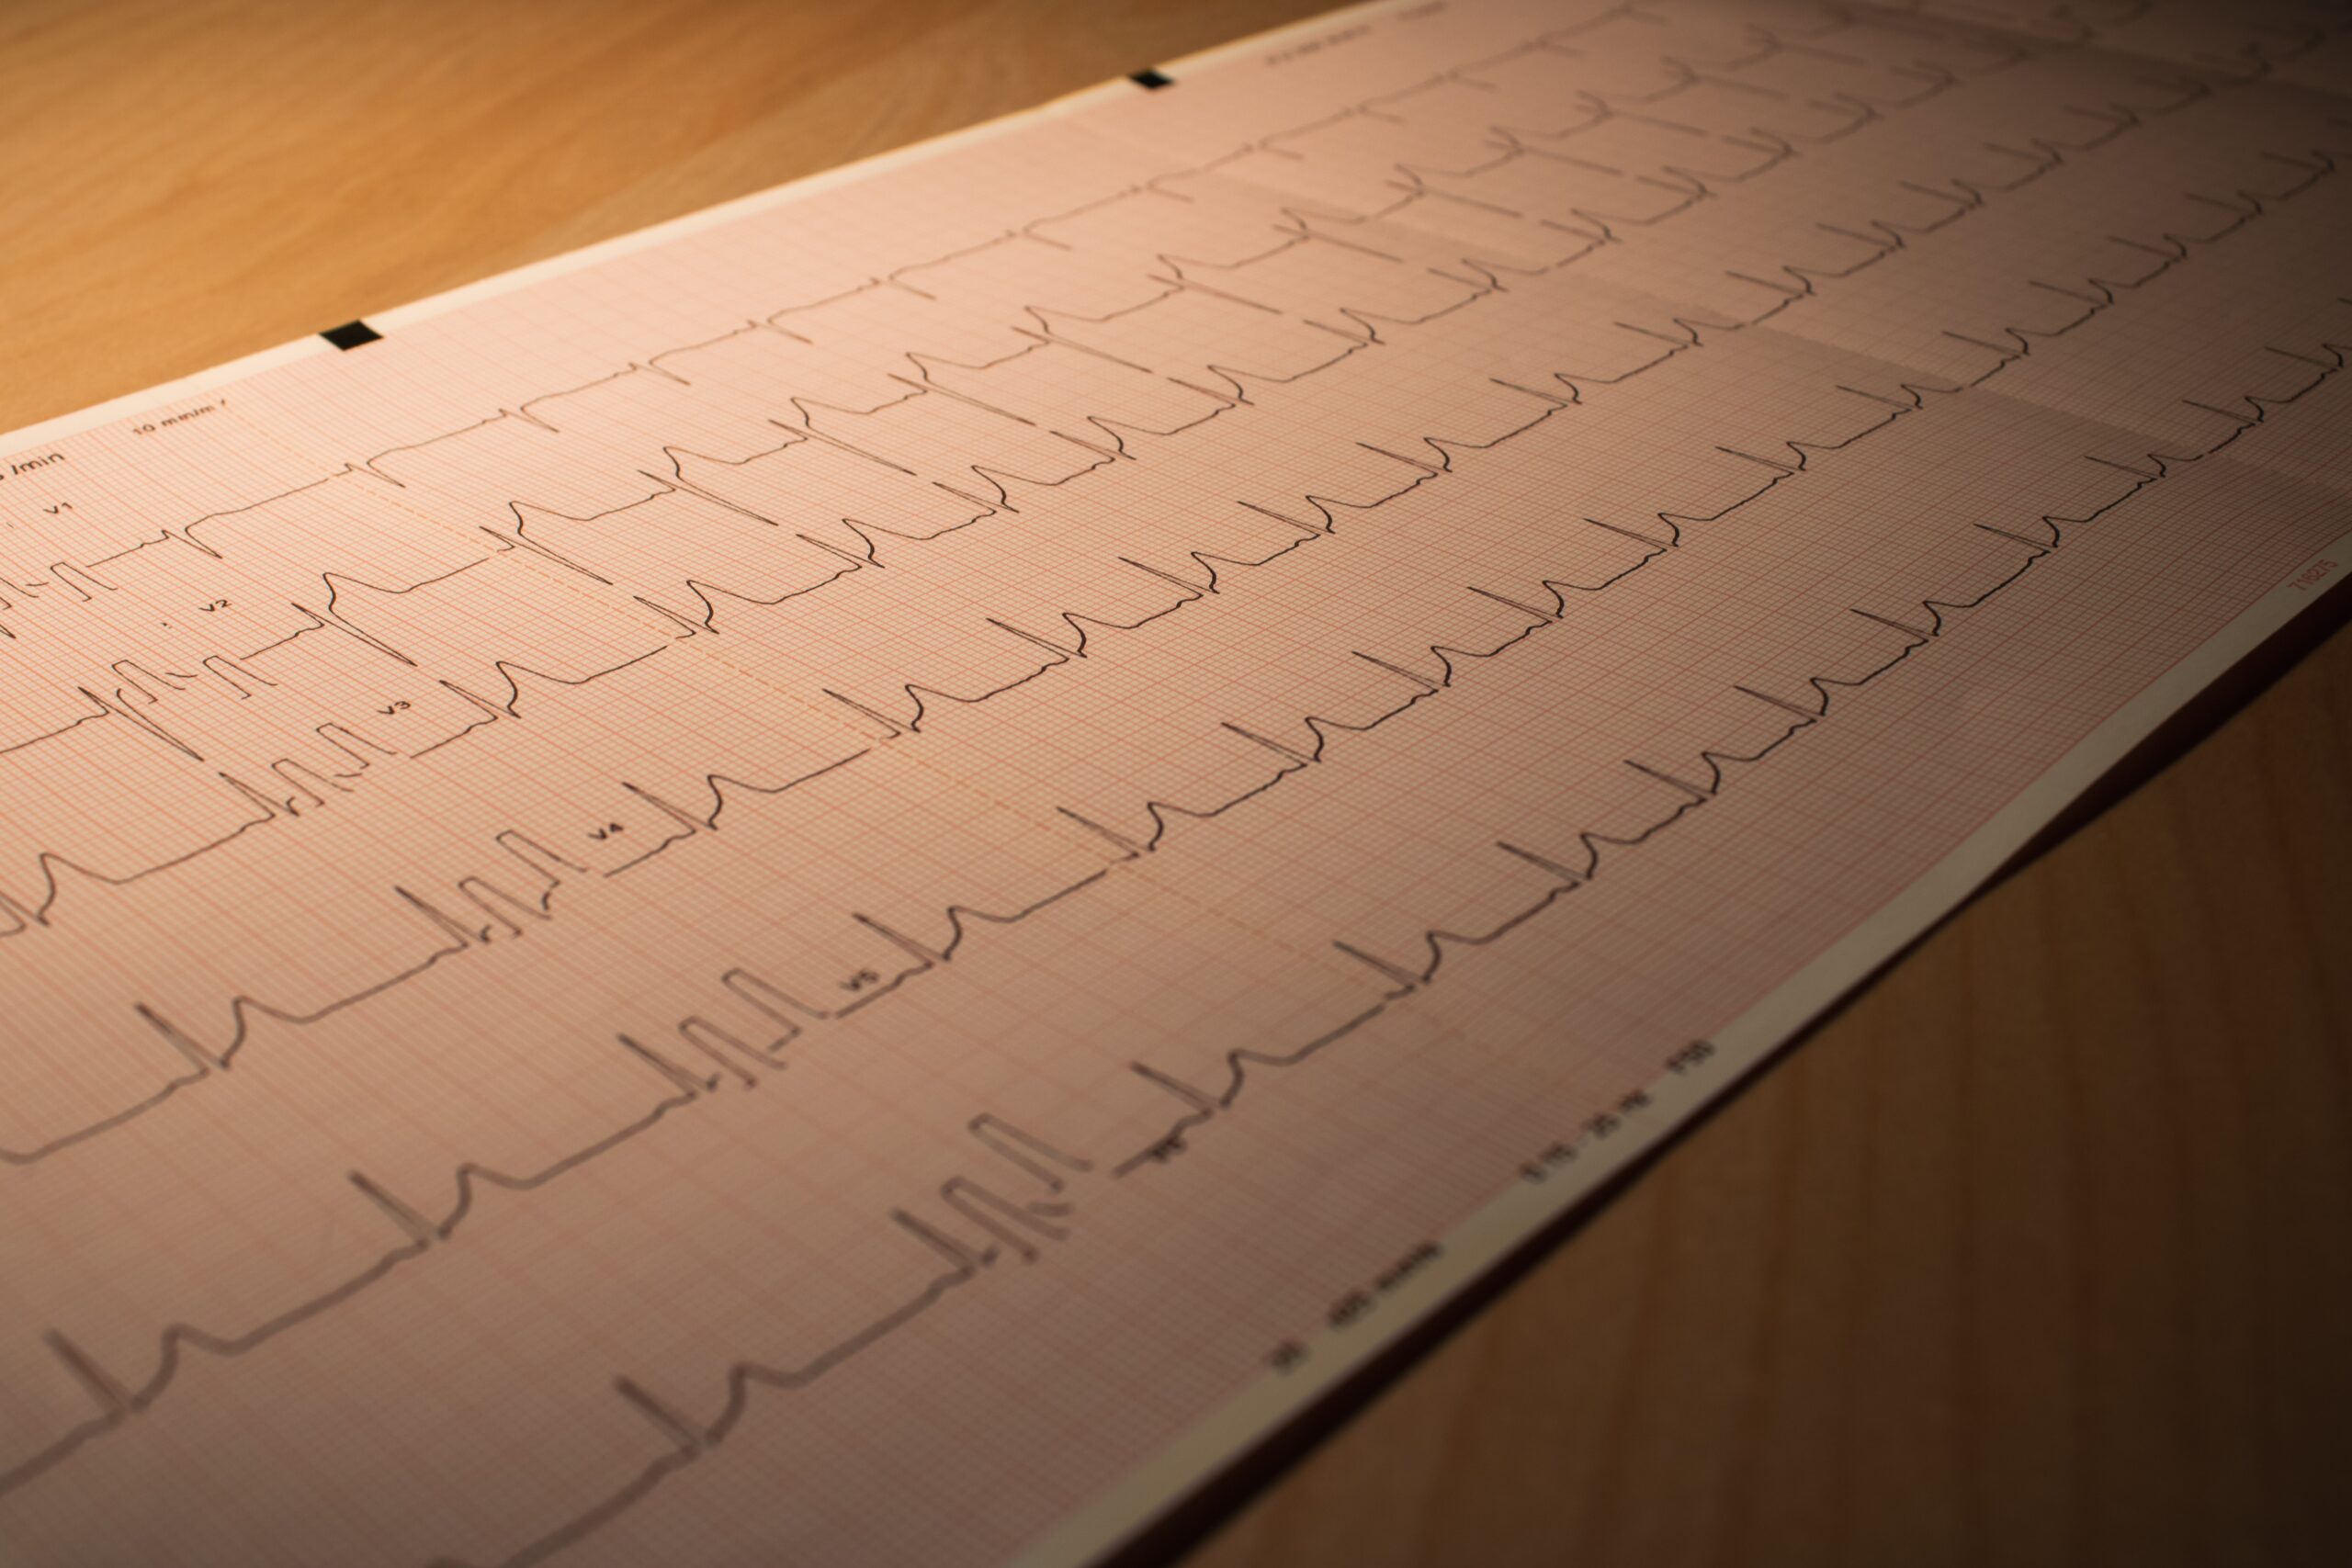 Un corazón acelerado Se considera que tiene una frecuencia cardíaca rápida o taquicardia, con más de 100 latidos por minuto estando en reposo.